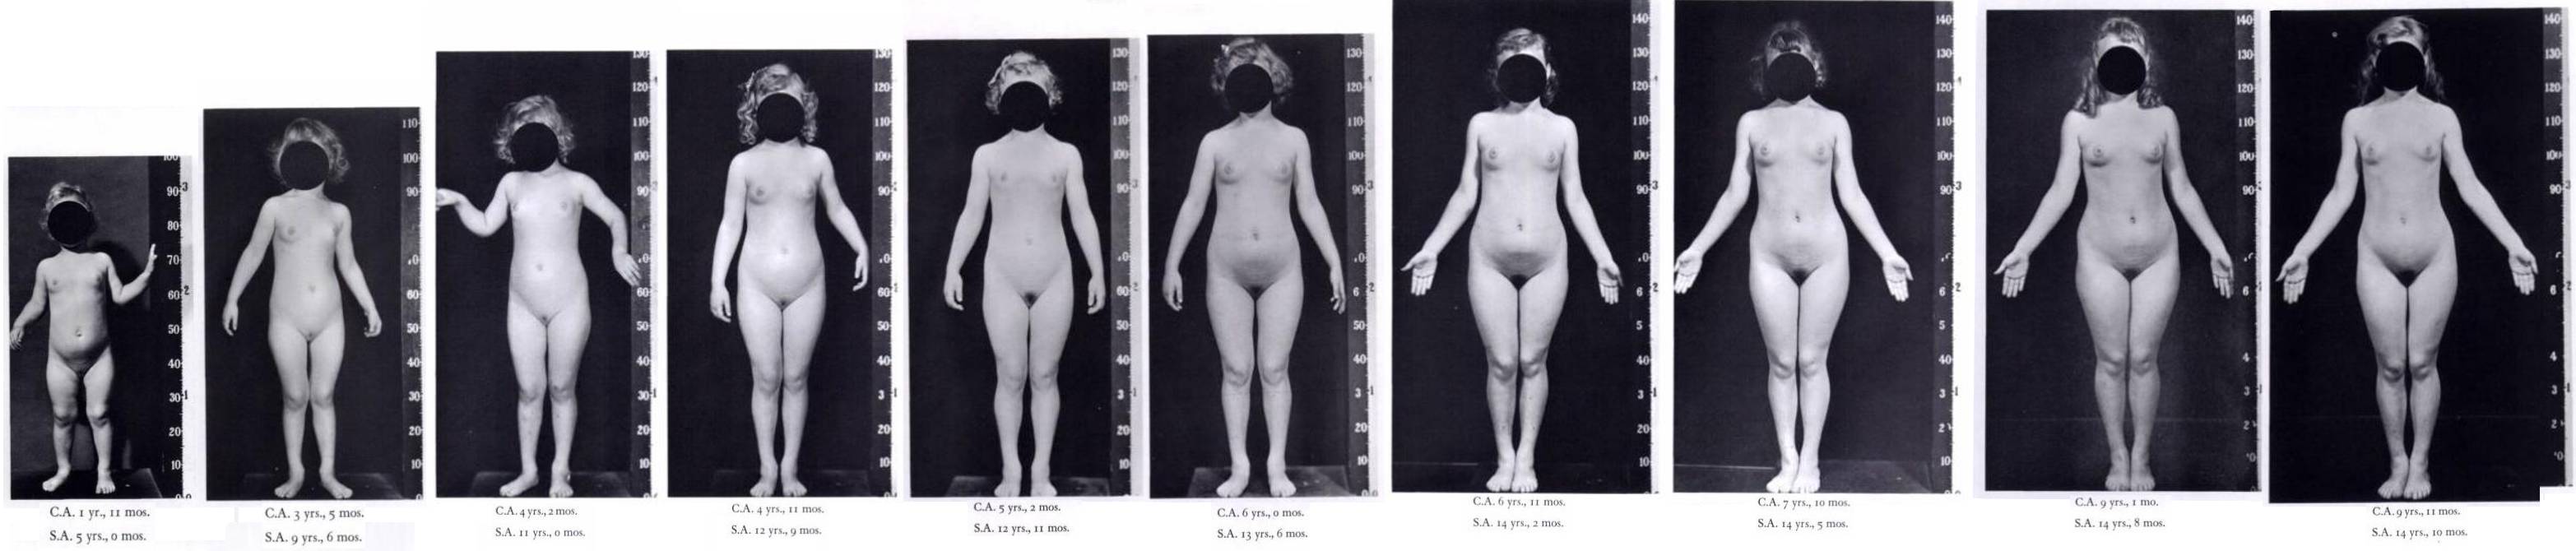 изменение груди с возрастом у женщин фото 51